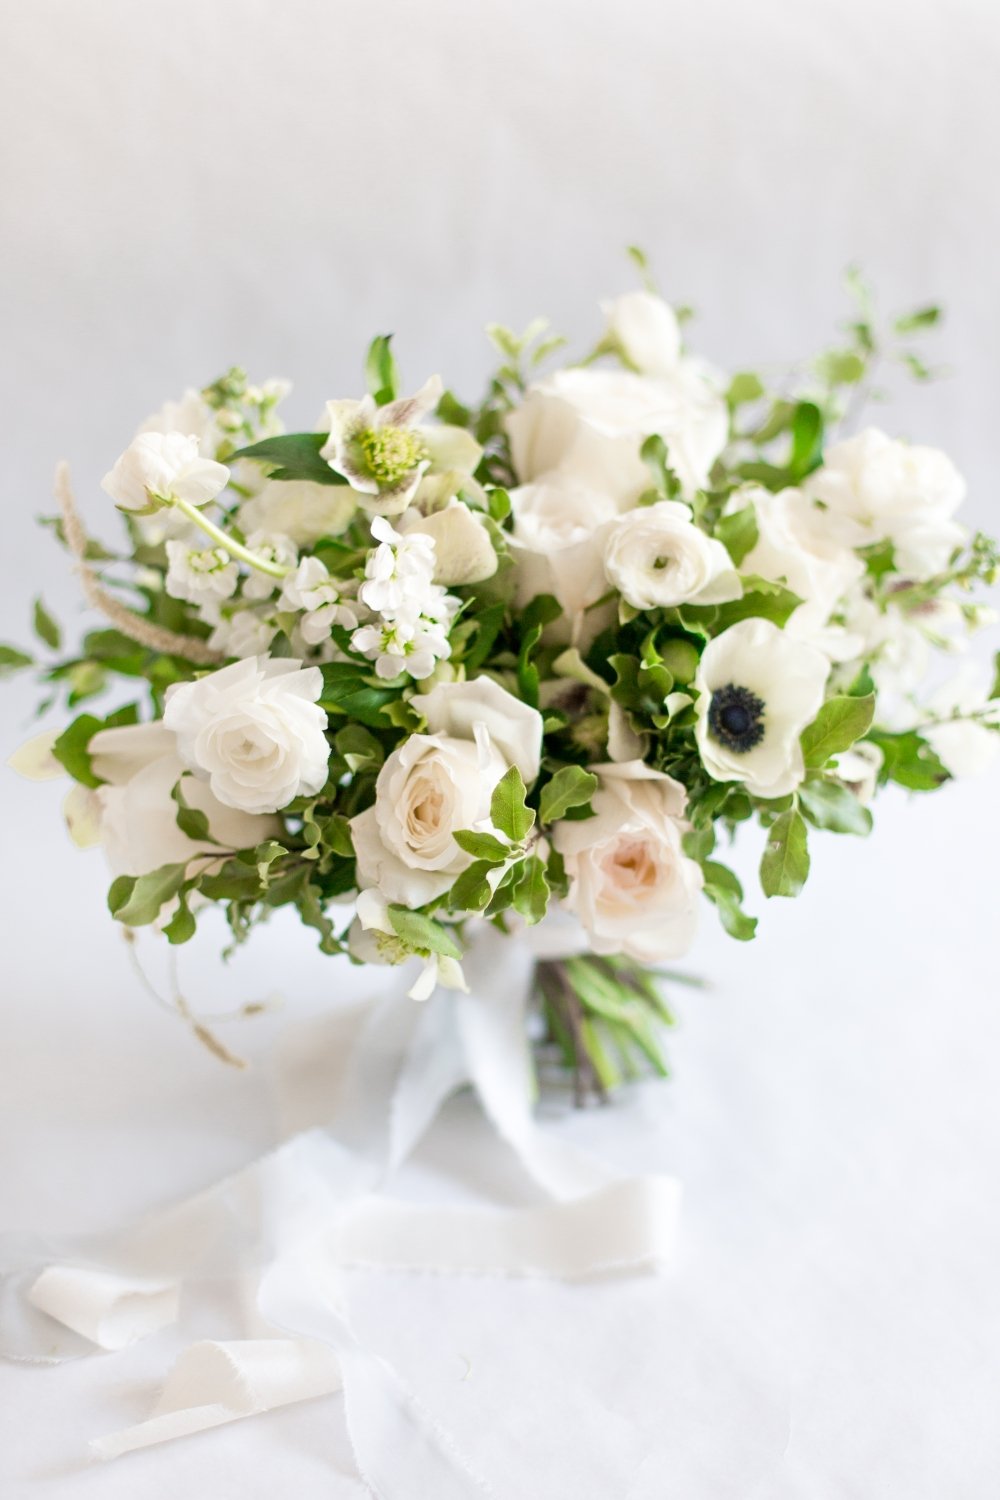 Букет белых цветов